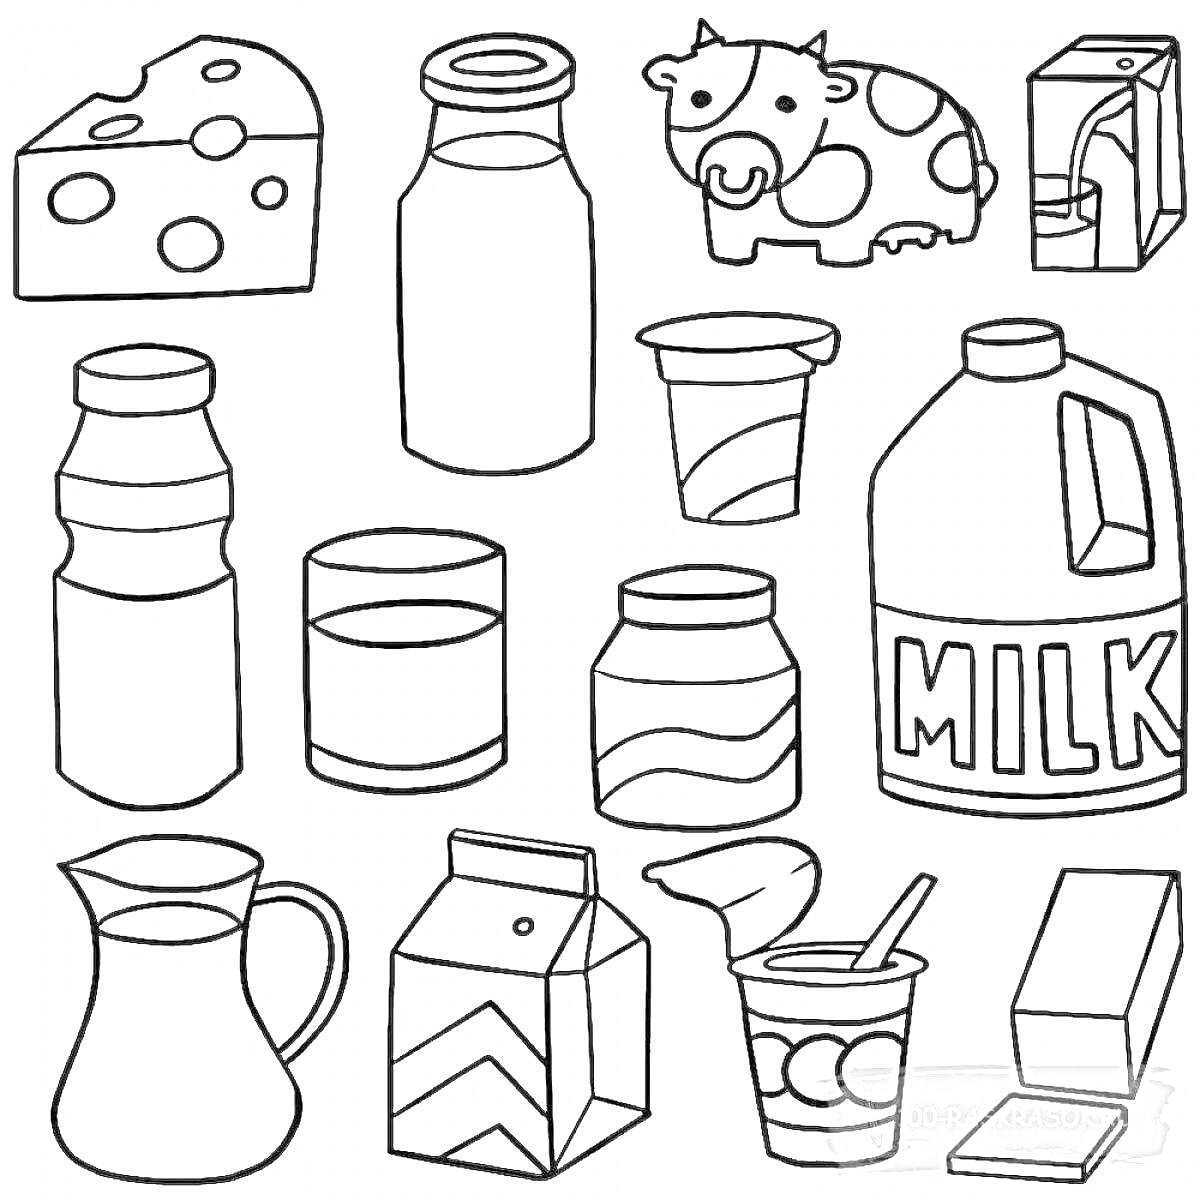 Раскраска Сыр, бутылка с крышечкой, корова, пакет сока, бутылочка, стакан молока, йогурт, большой контейнер с молоком, кувшин, пакет молока, баночка с йогуртом и ложкой, пачка масла